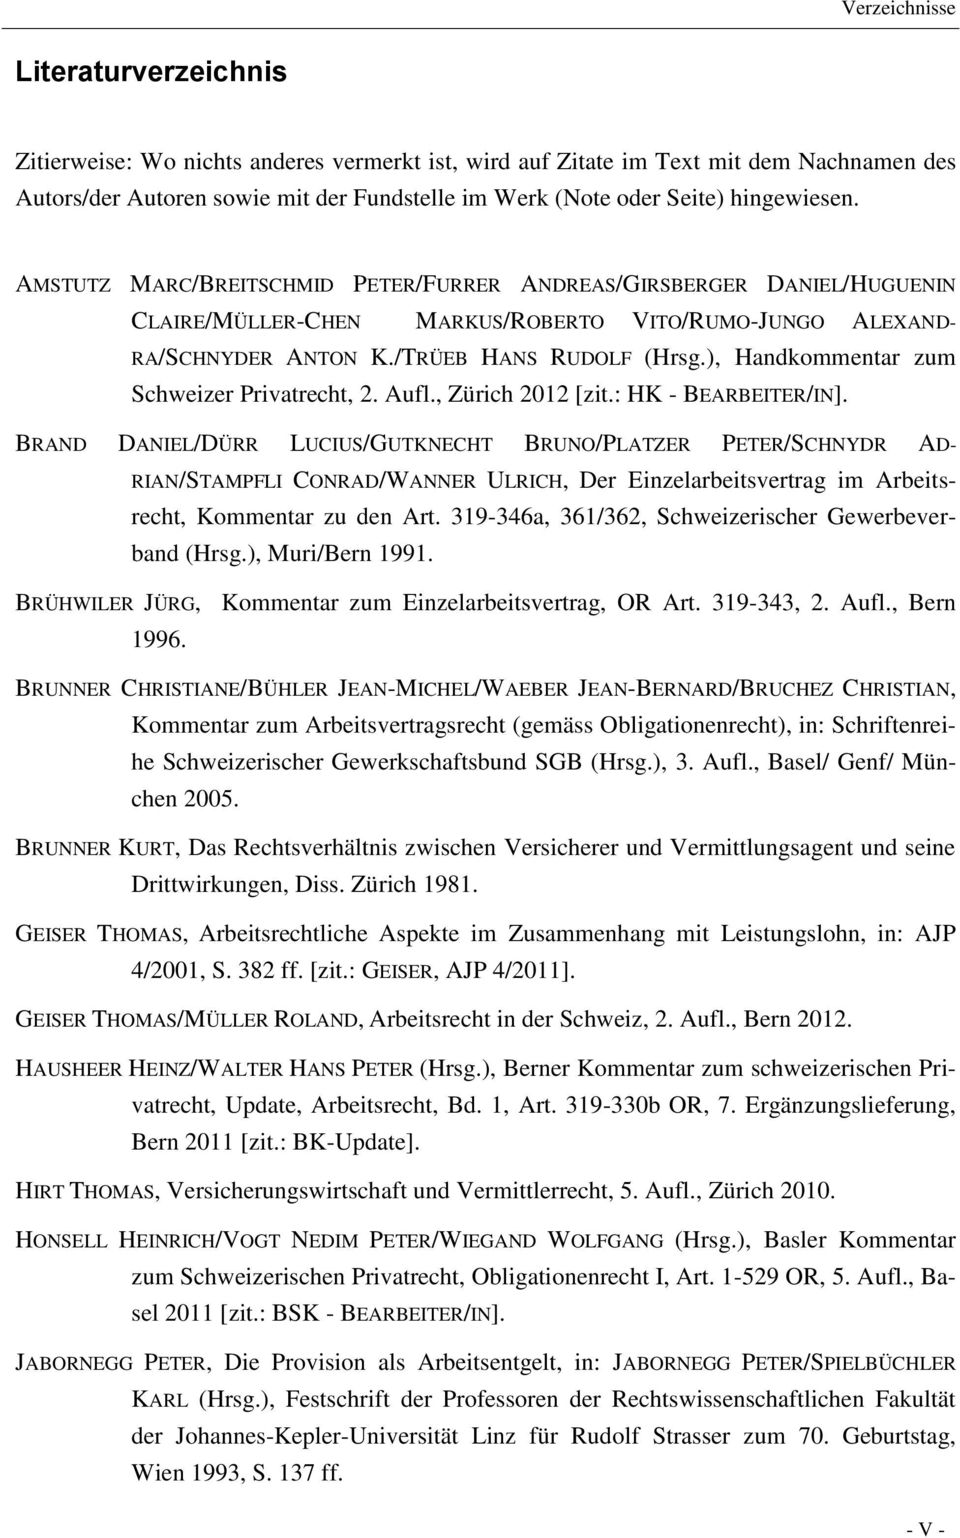 ), Handkommentar zum Schweizer Privatrecht, 2. Aufl., Zürich 2012 [zit.: HK - BEARBEITER/IN].